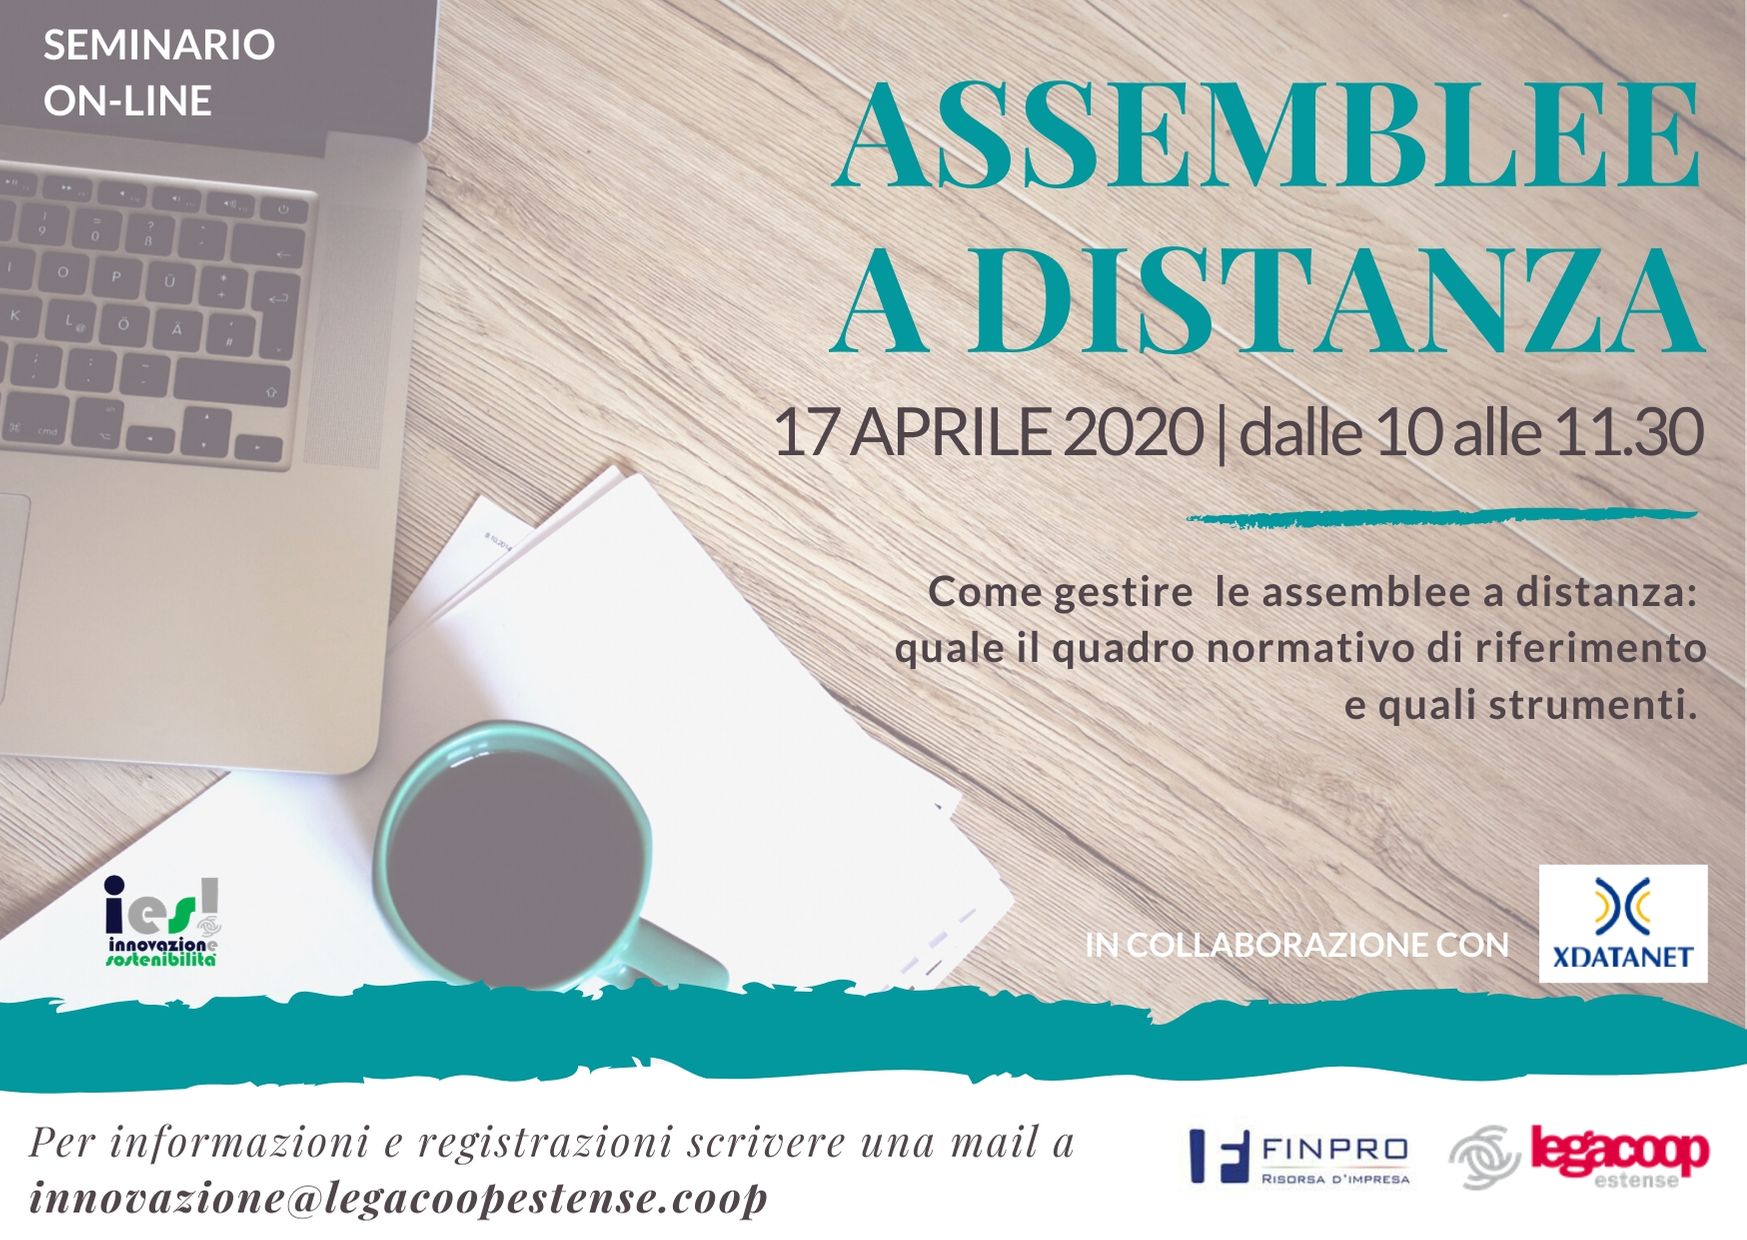 Assemblee a distanza: il 17 aprile un seminario online promosso da Legacoop Estense e Finpro